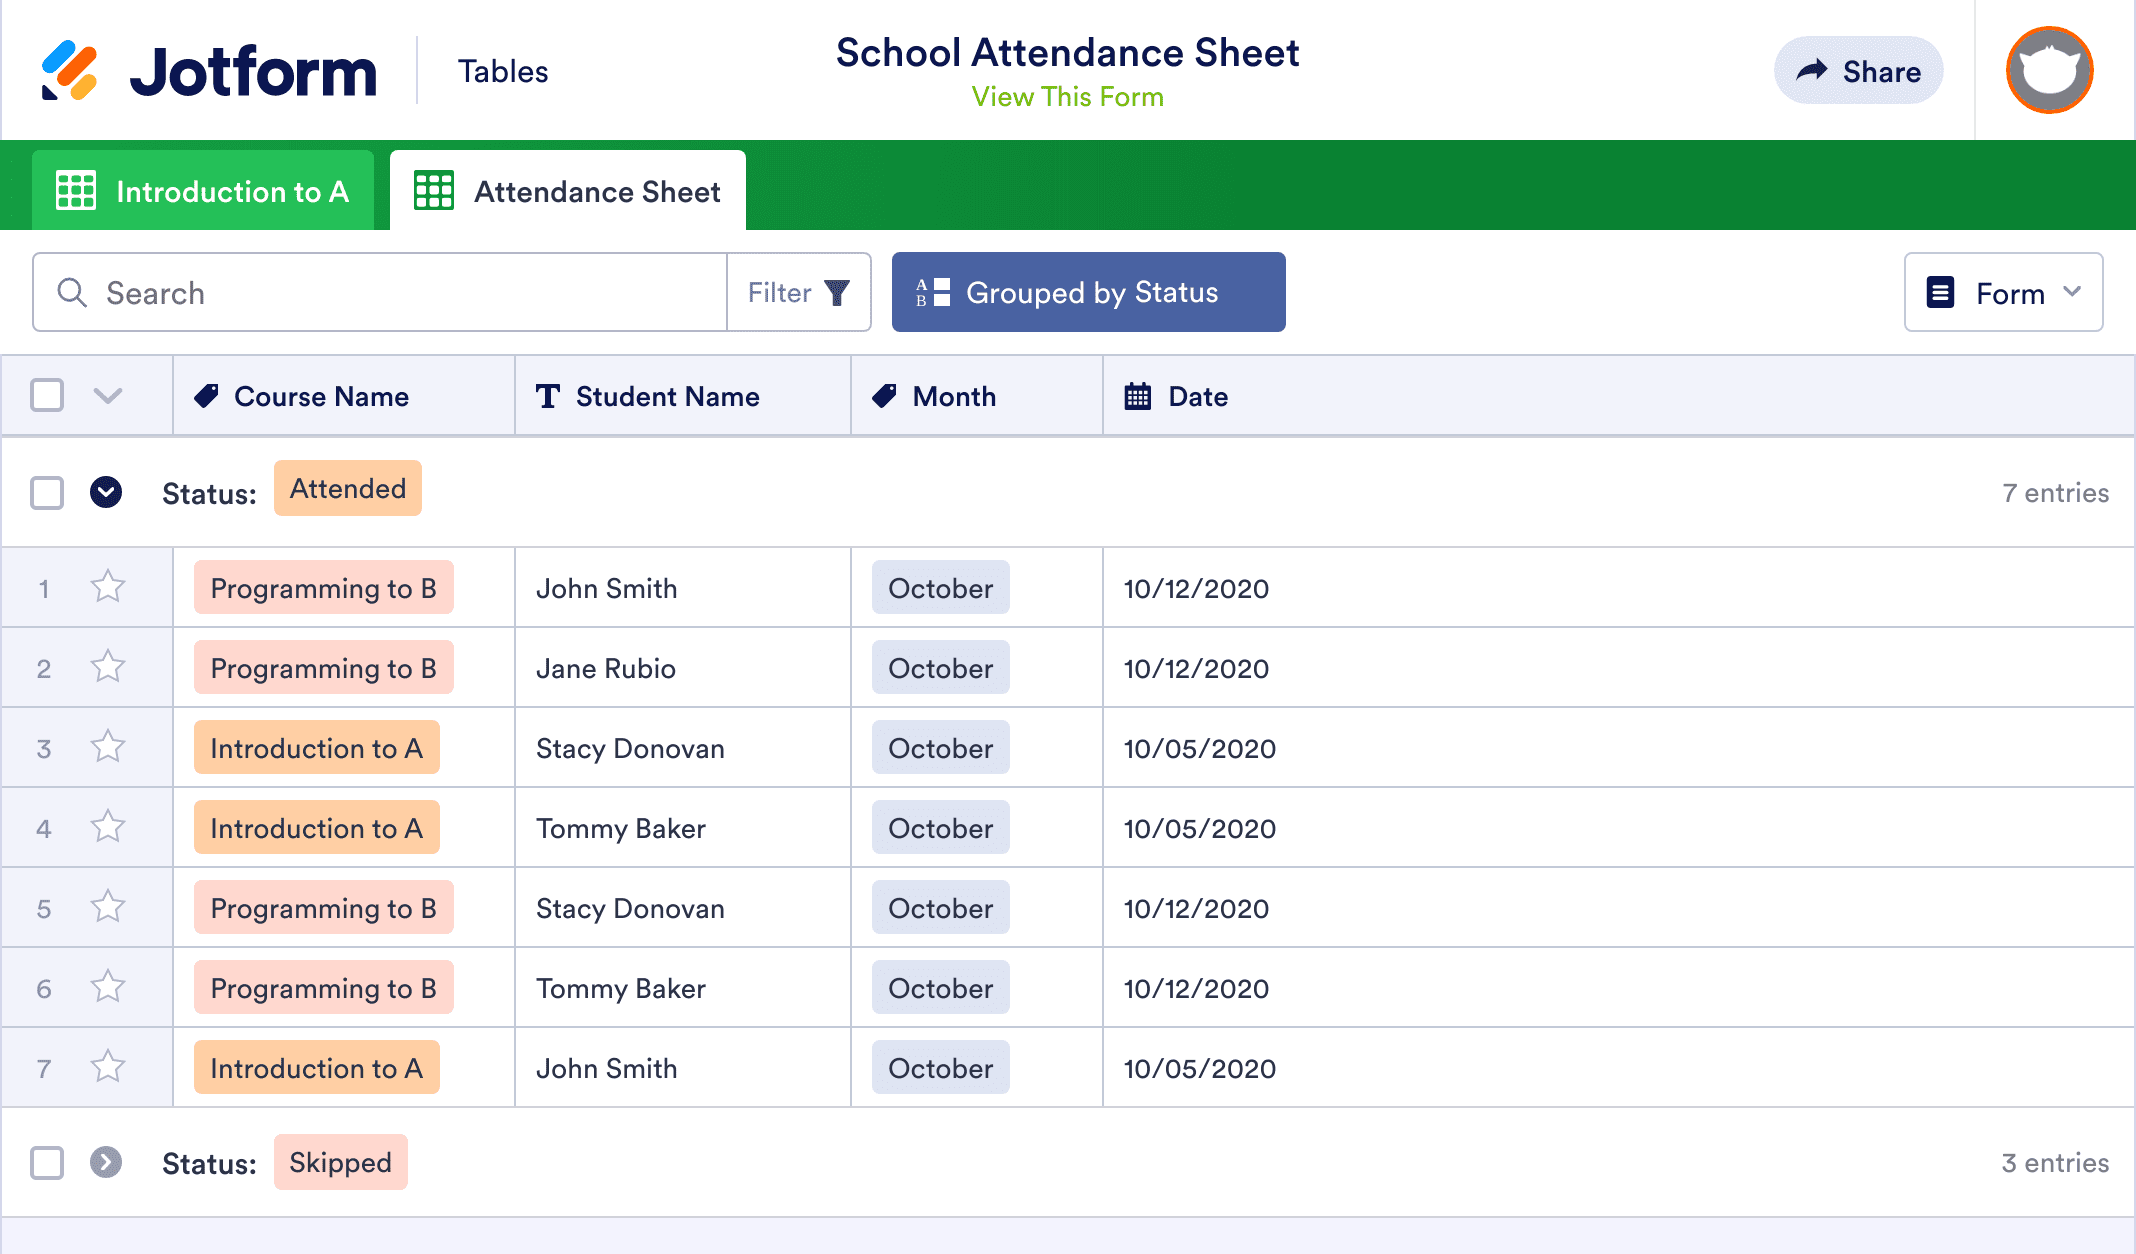 School Attendance Sheet